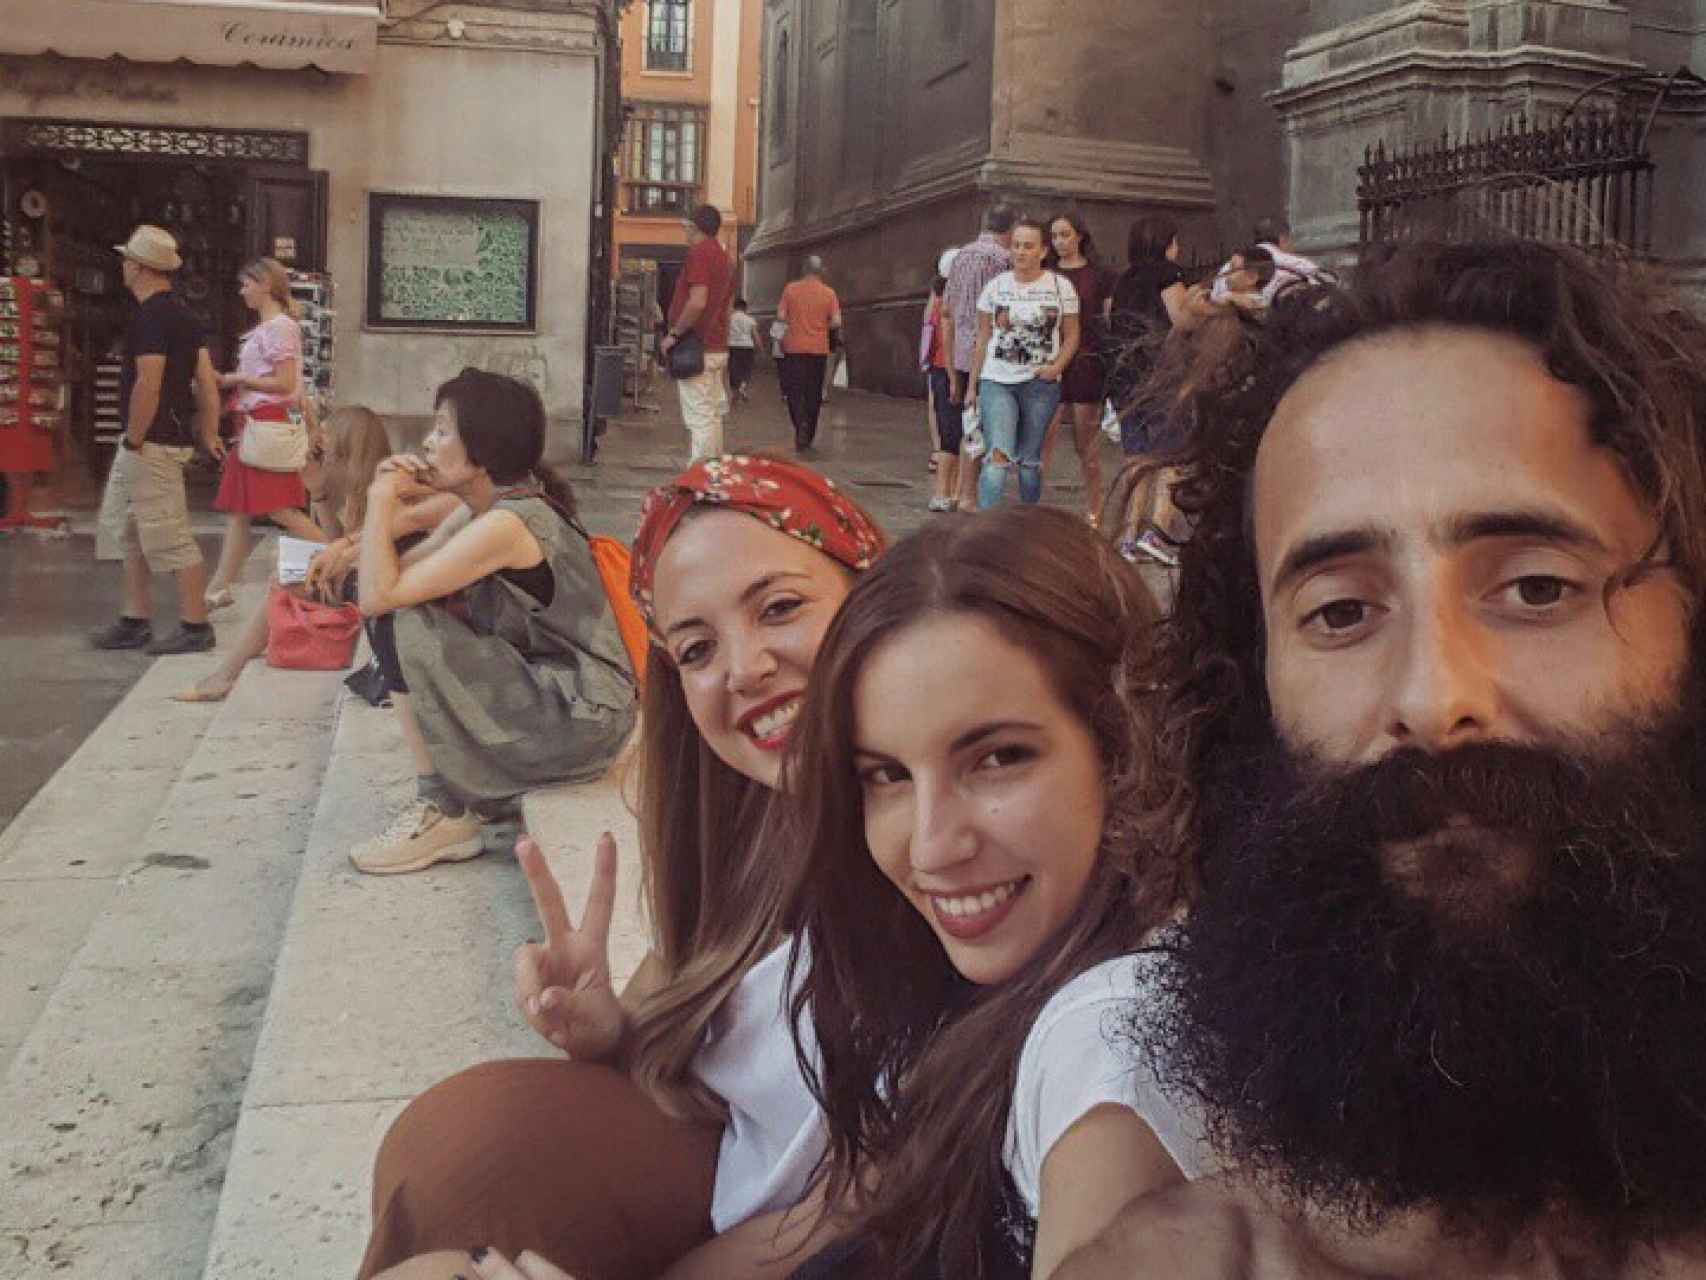 Olmo se hace un selfie con gente de la calle que se interesa por él.